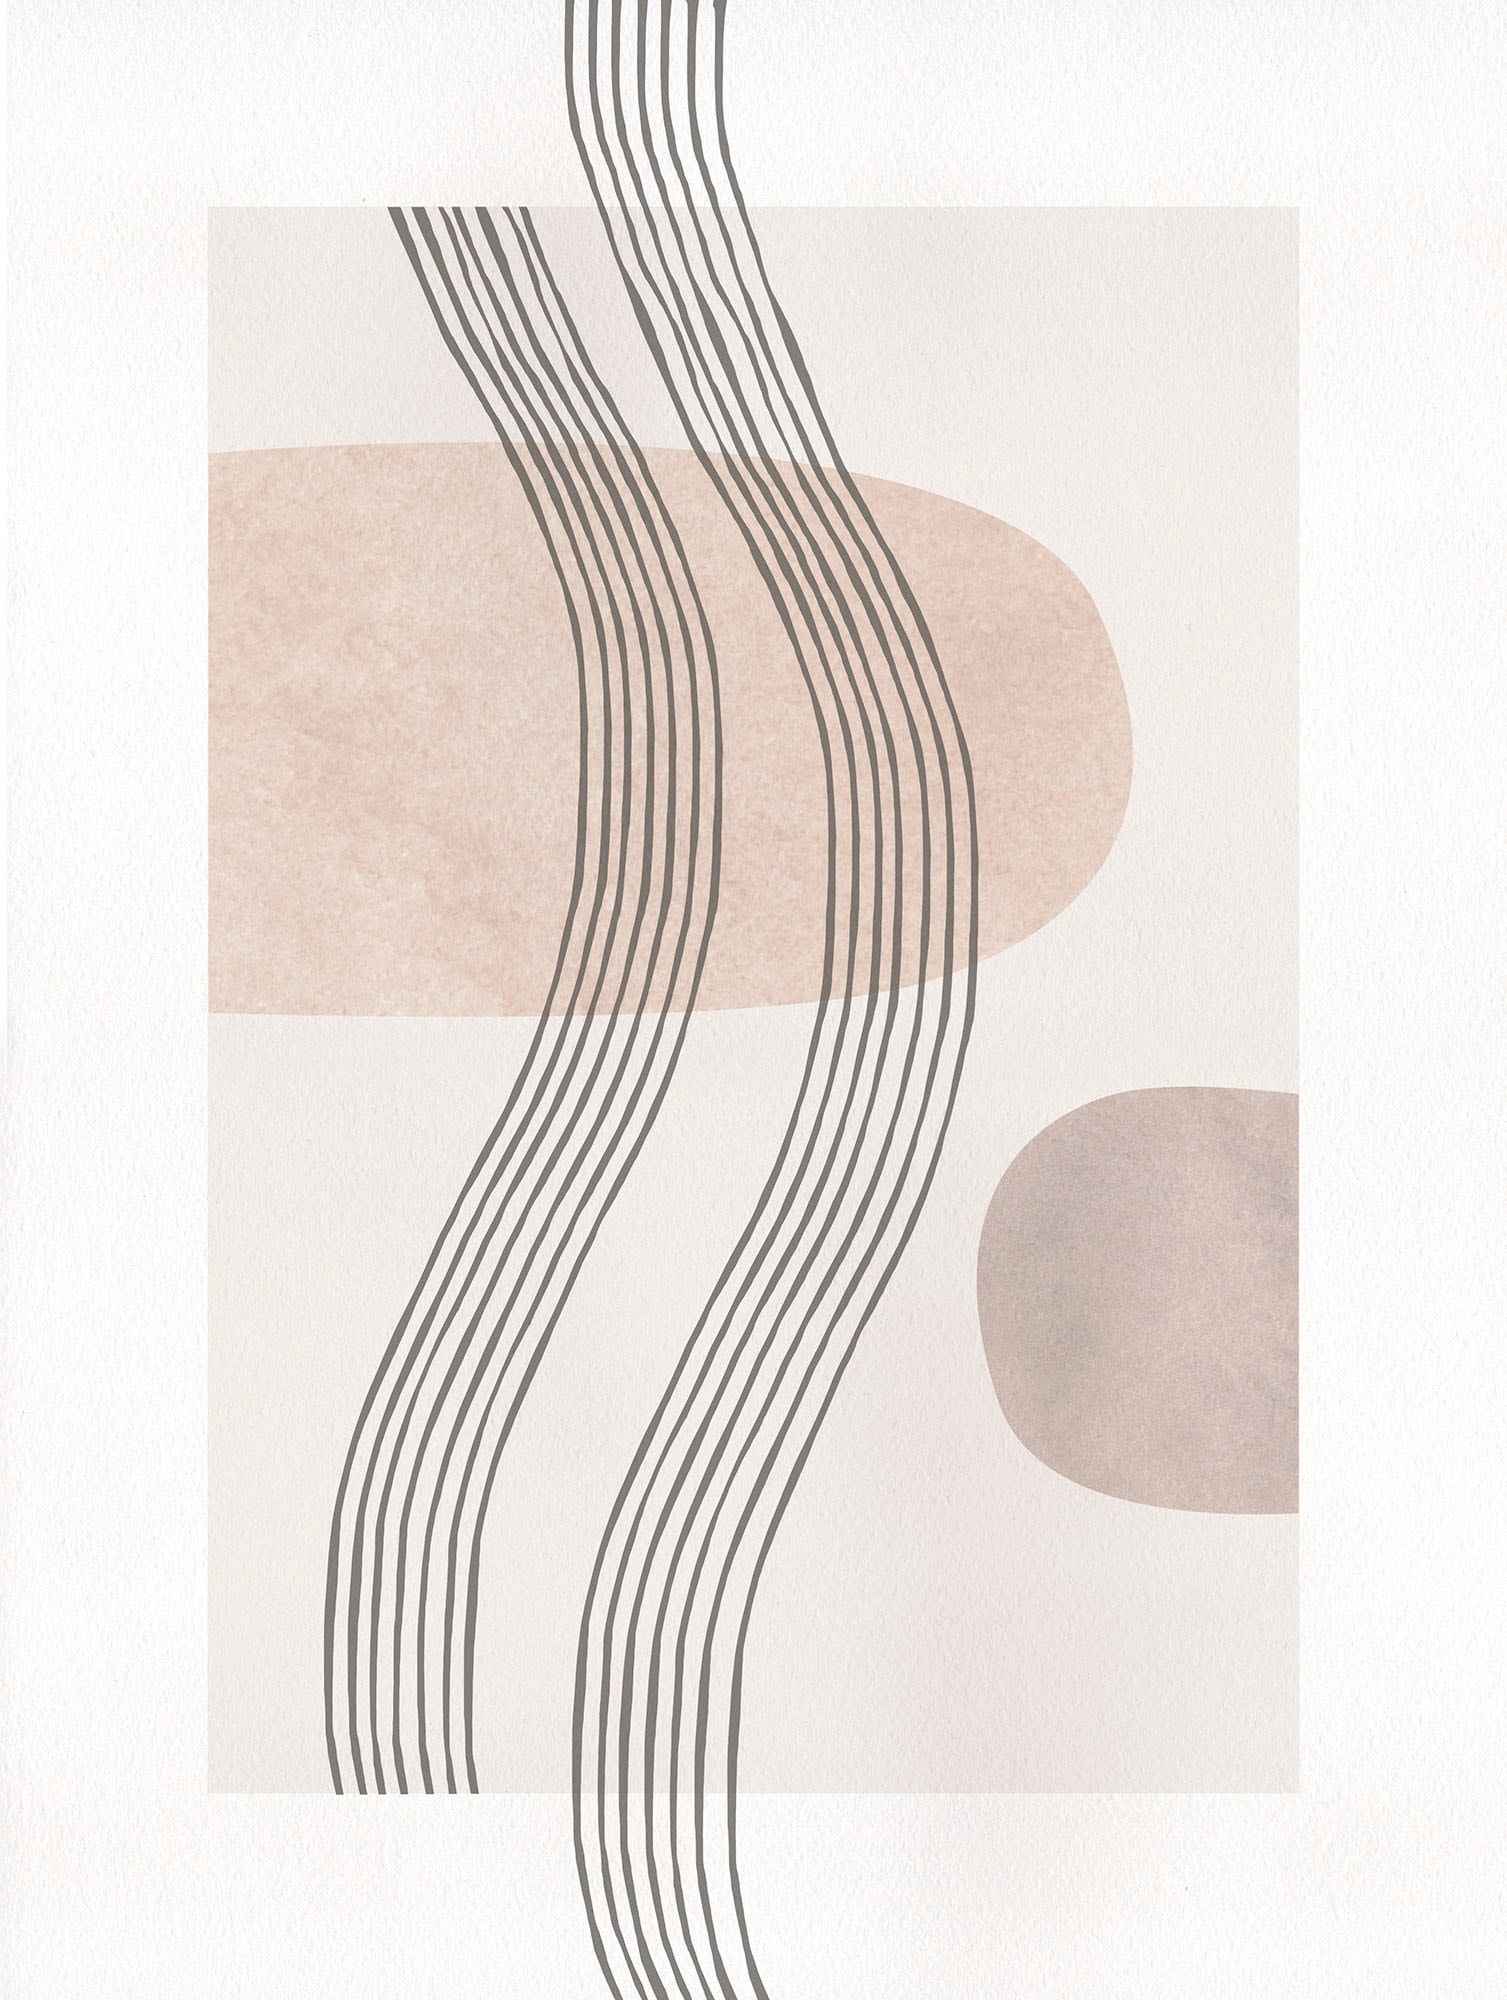 Komar Wandbild »Line Art Waves«, (1 St.), Deutsches Premium-Poster Fotopapier mit seidenmatter Oberfläche und hoher Lichtbeständigkeit. Für fotorealistische Drucke mit gestochen scharfen Details und hervorragender Farbbrillanz. von Komar